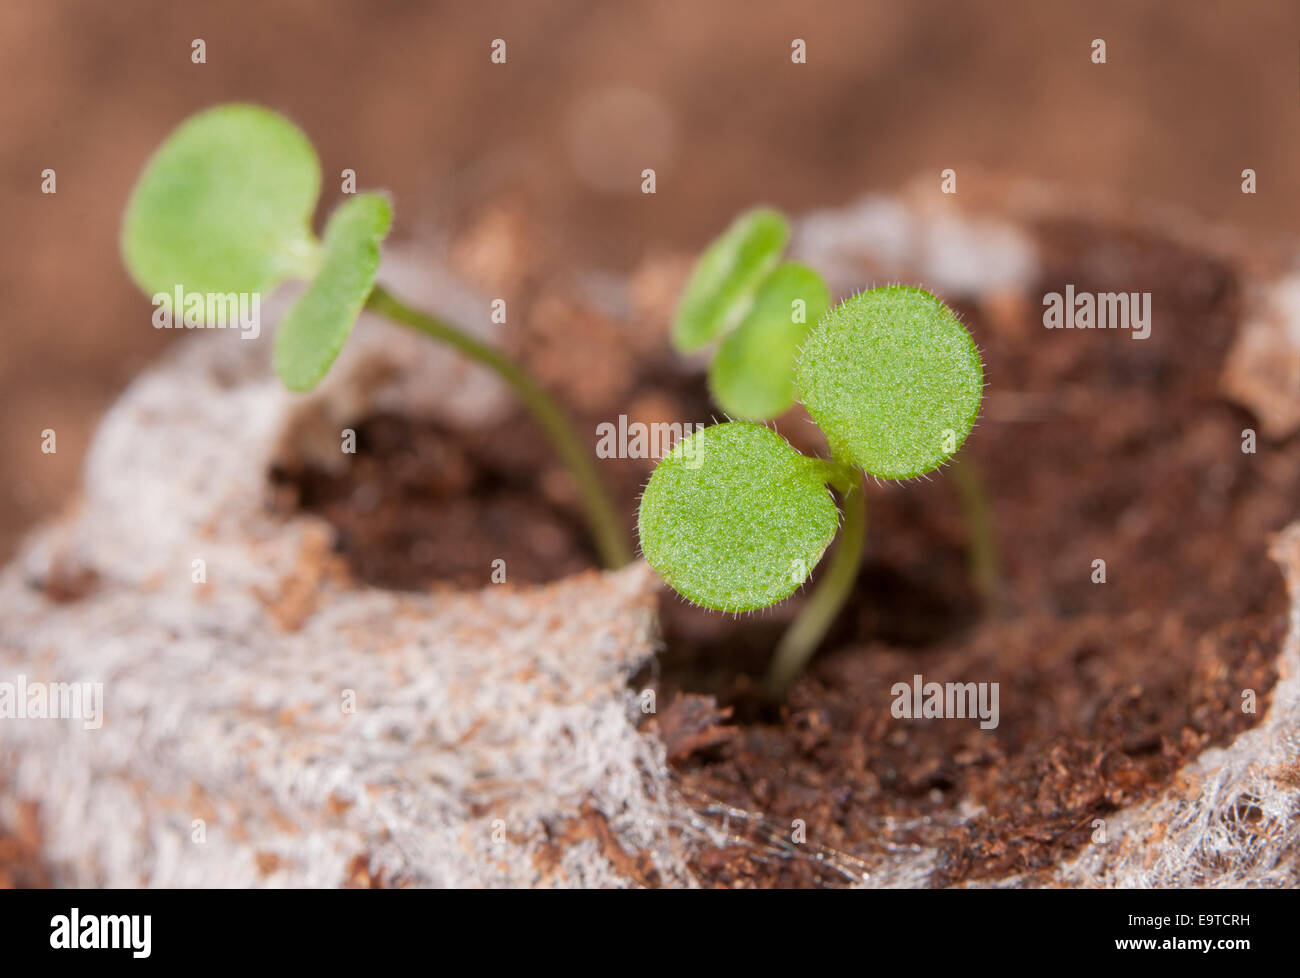 Seedlings growing in a peat moss pellet in spring Stock Photo